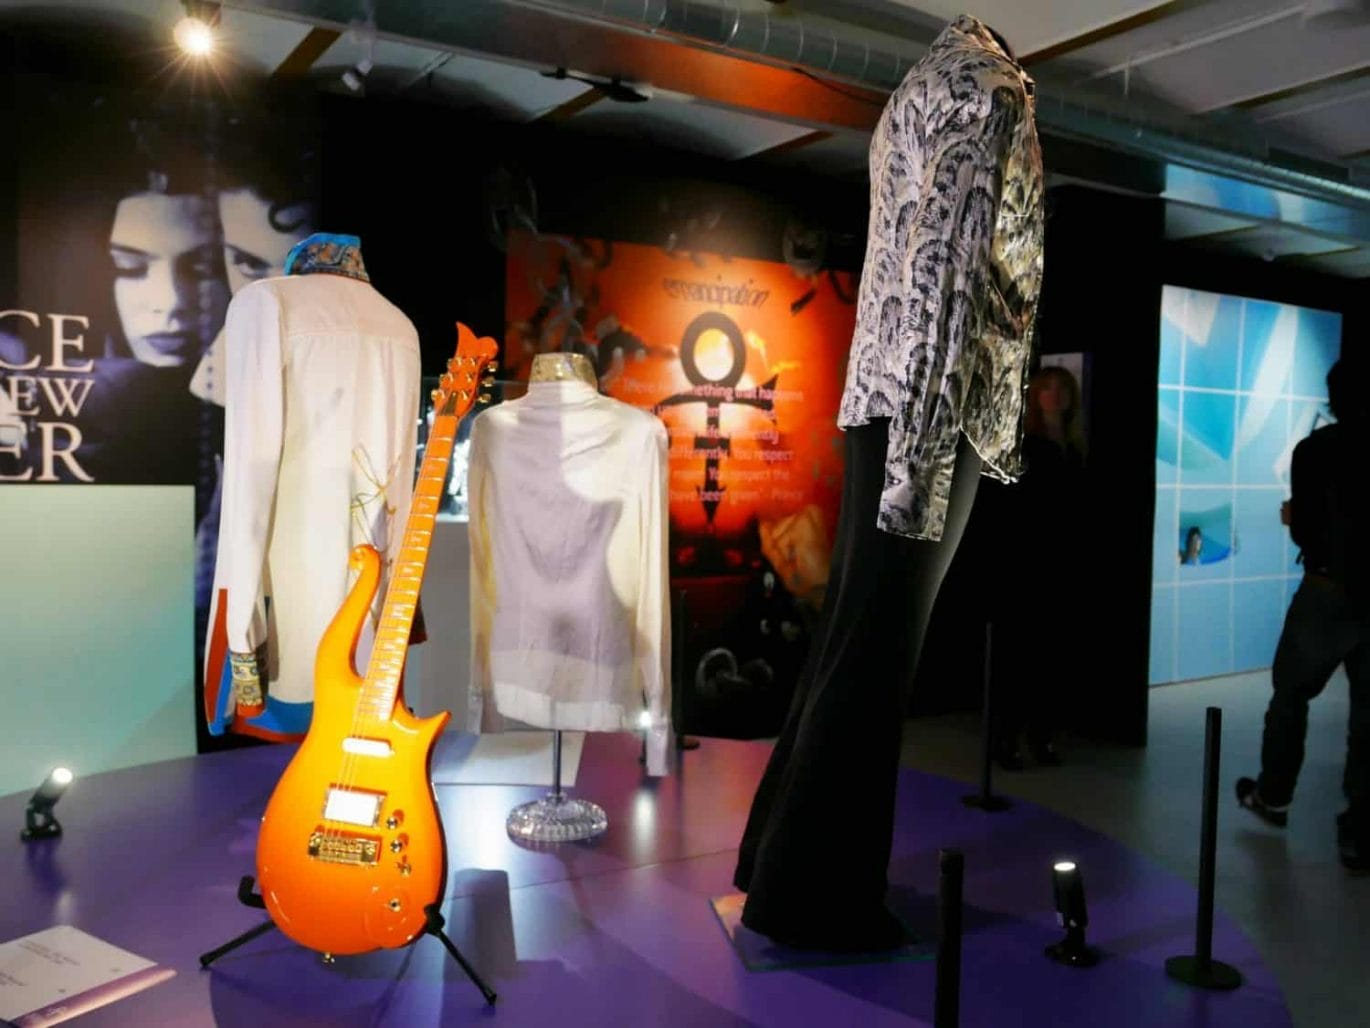 Kostuums en gitaren van Prince